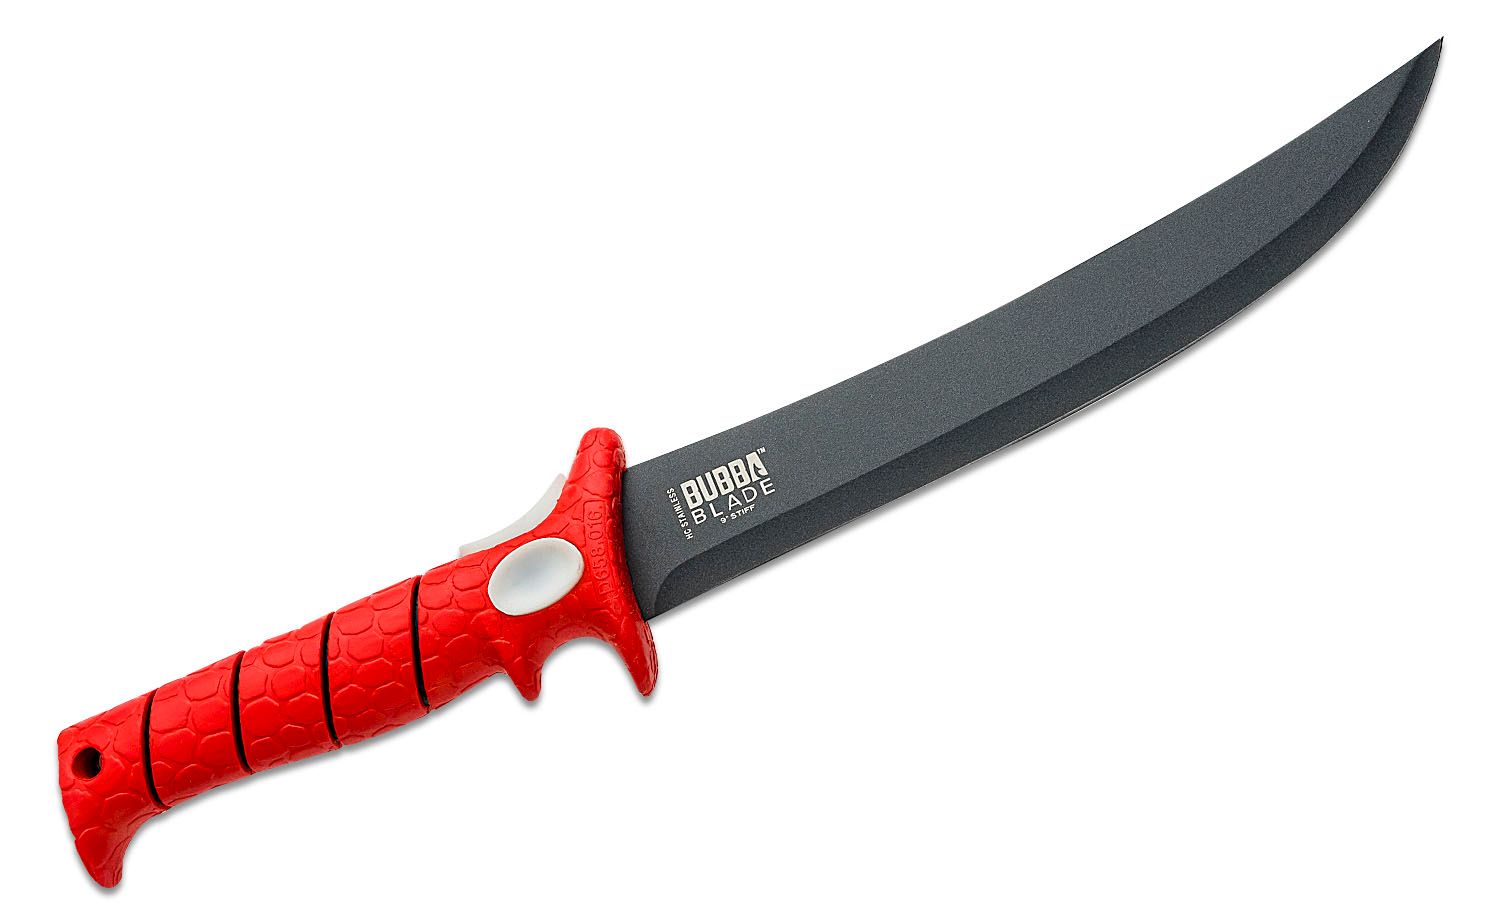 Svord Kiwi Fish Fillet Knife 9 Carbon Steel Blade, Black Polypropylene  Handles, Polyurethane Sheath - KnifeCenter - KFF